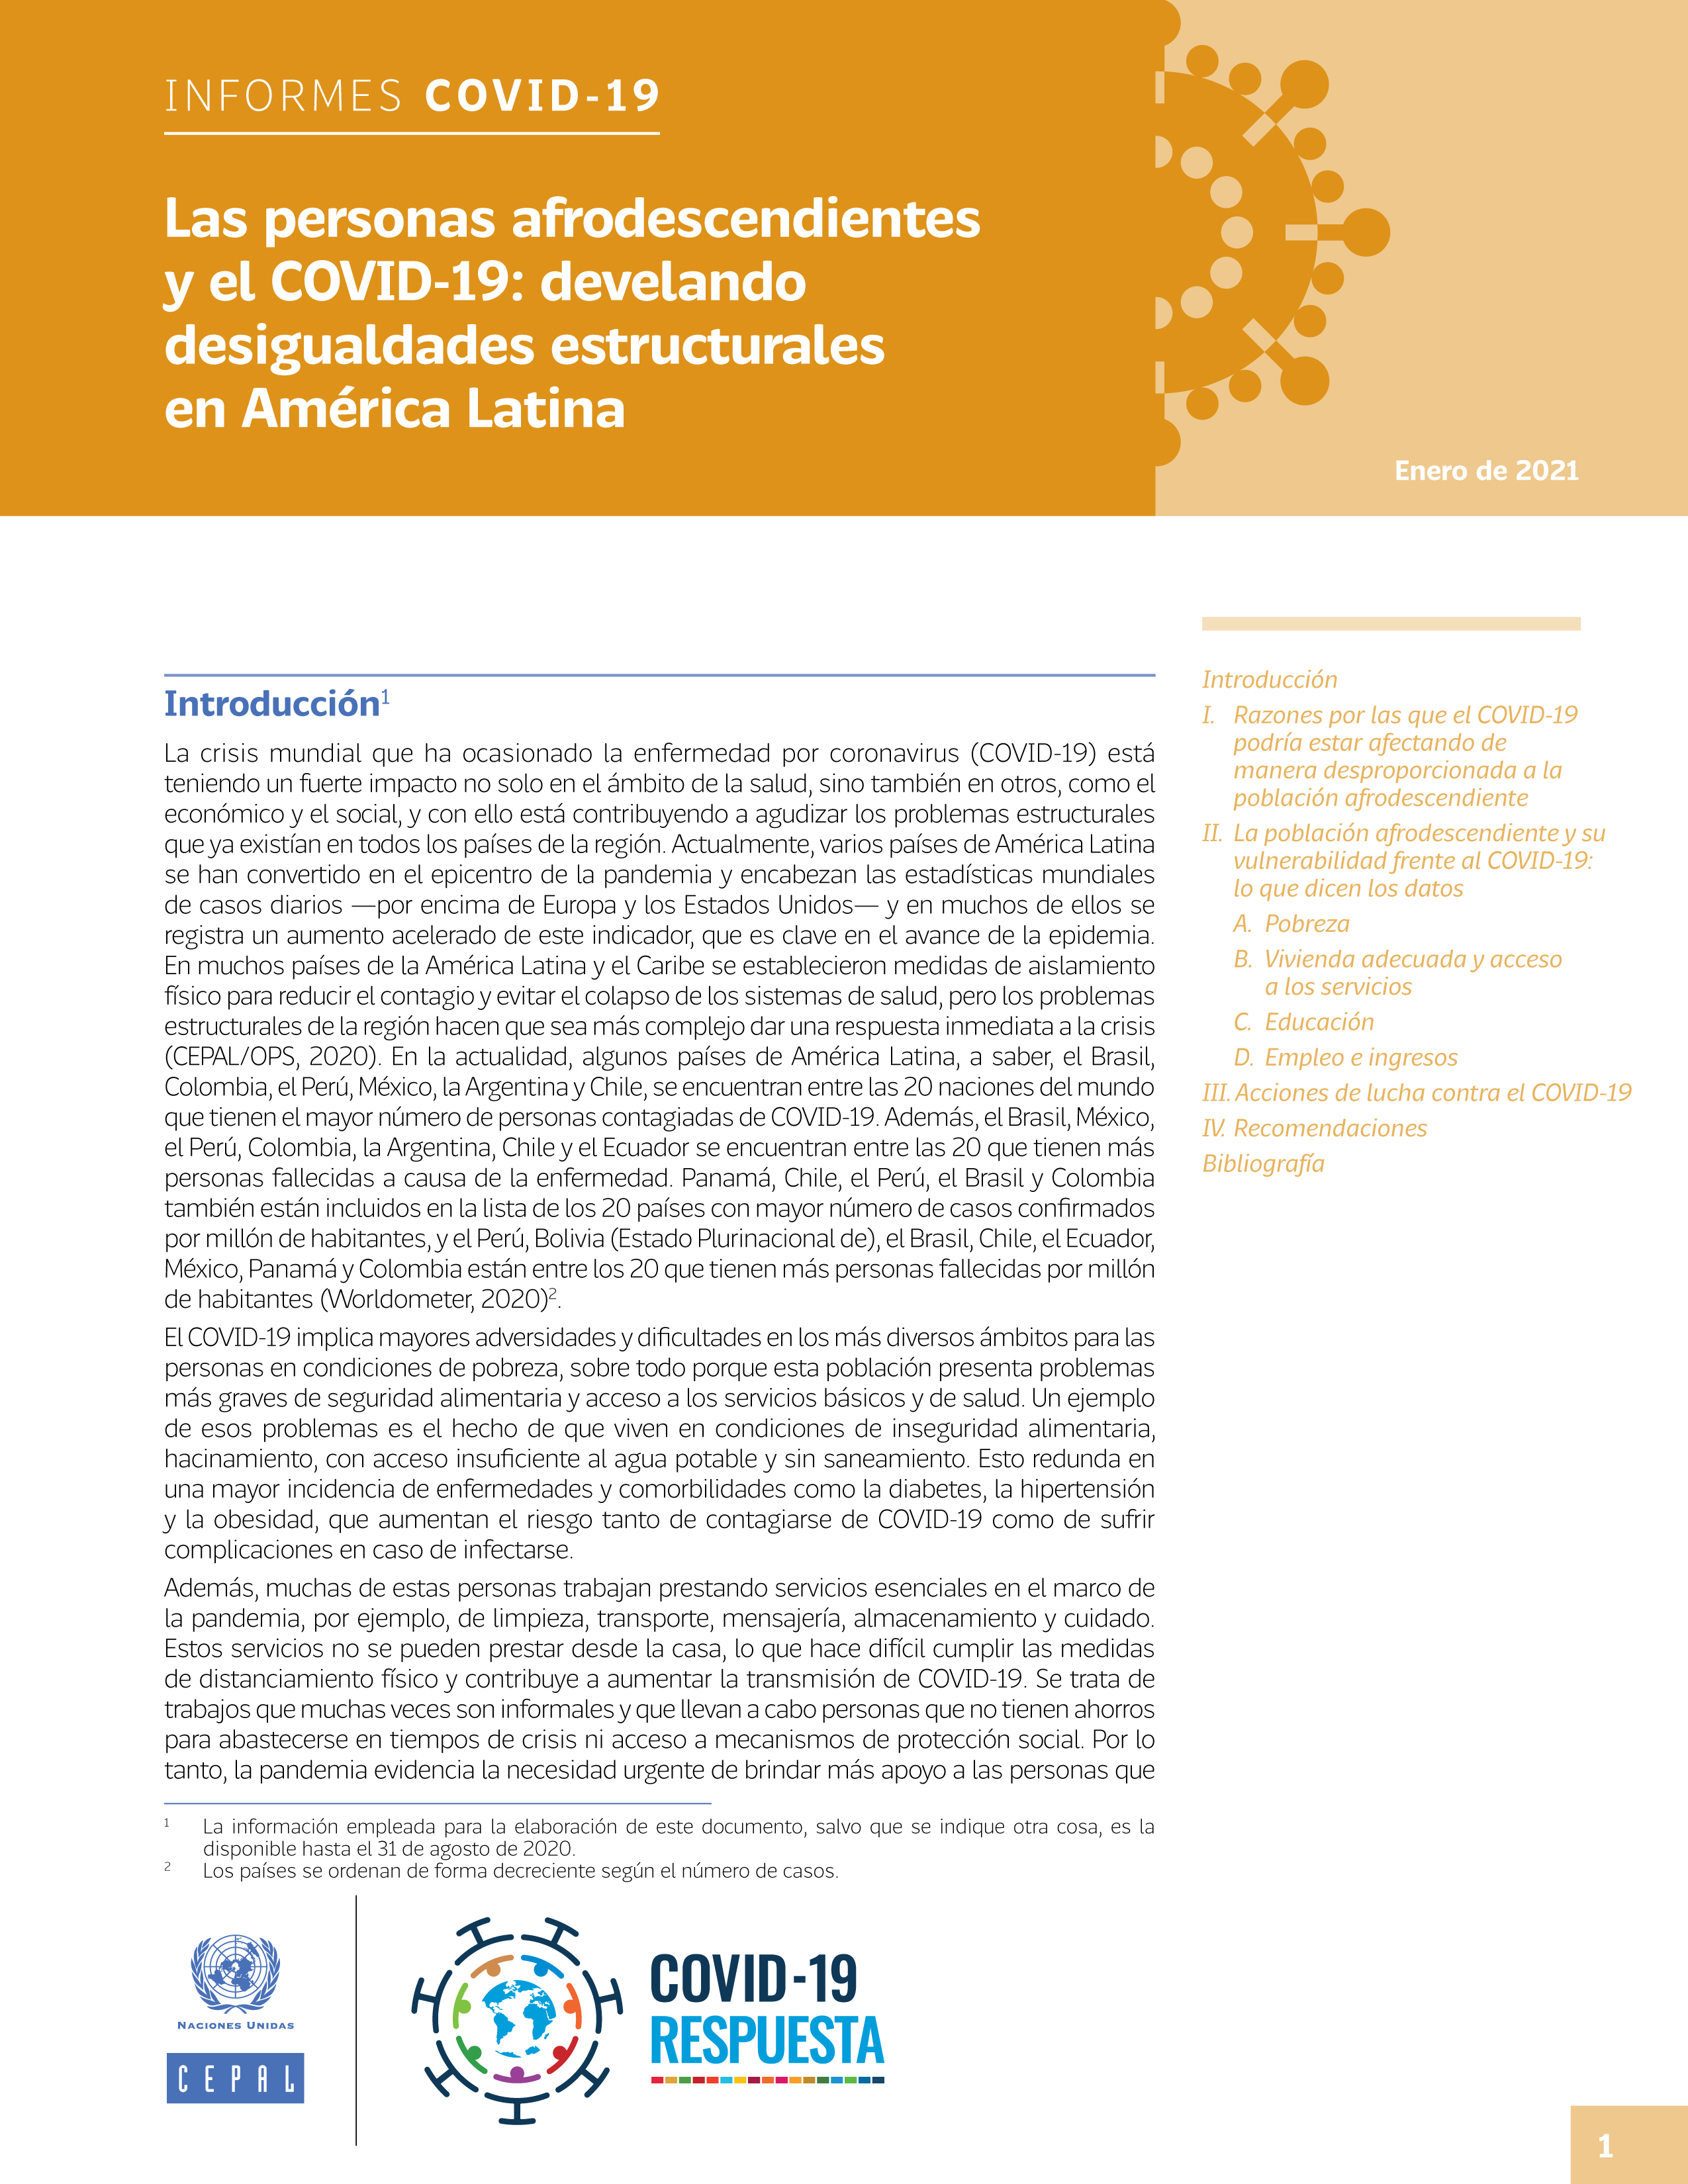 image of Las personas afrodescendientes y el COVID-19: develando desigualdades estructurales en América Latina